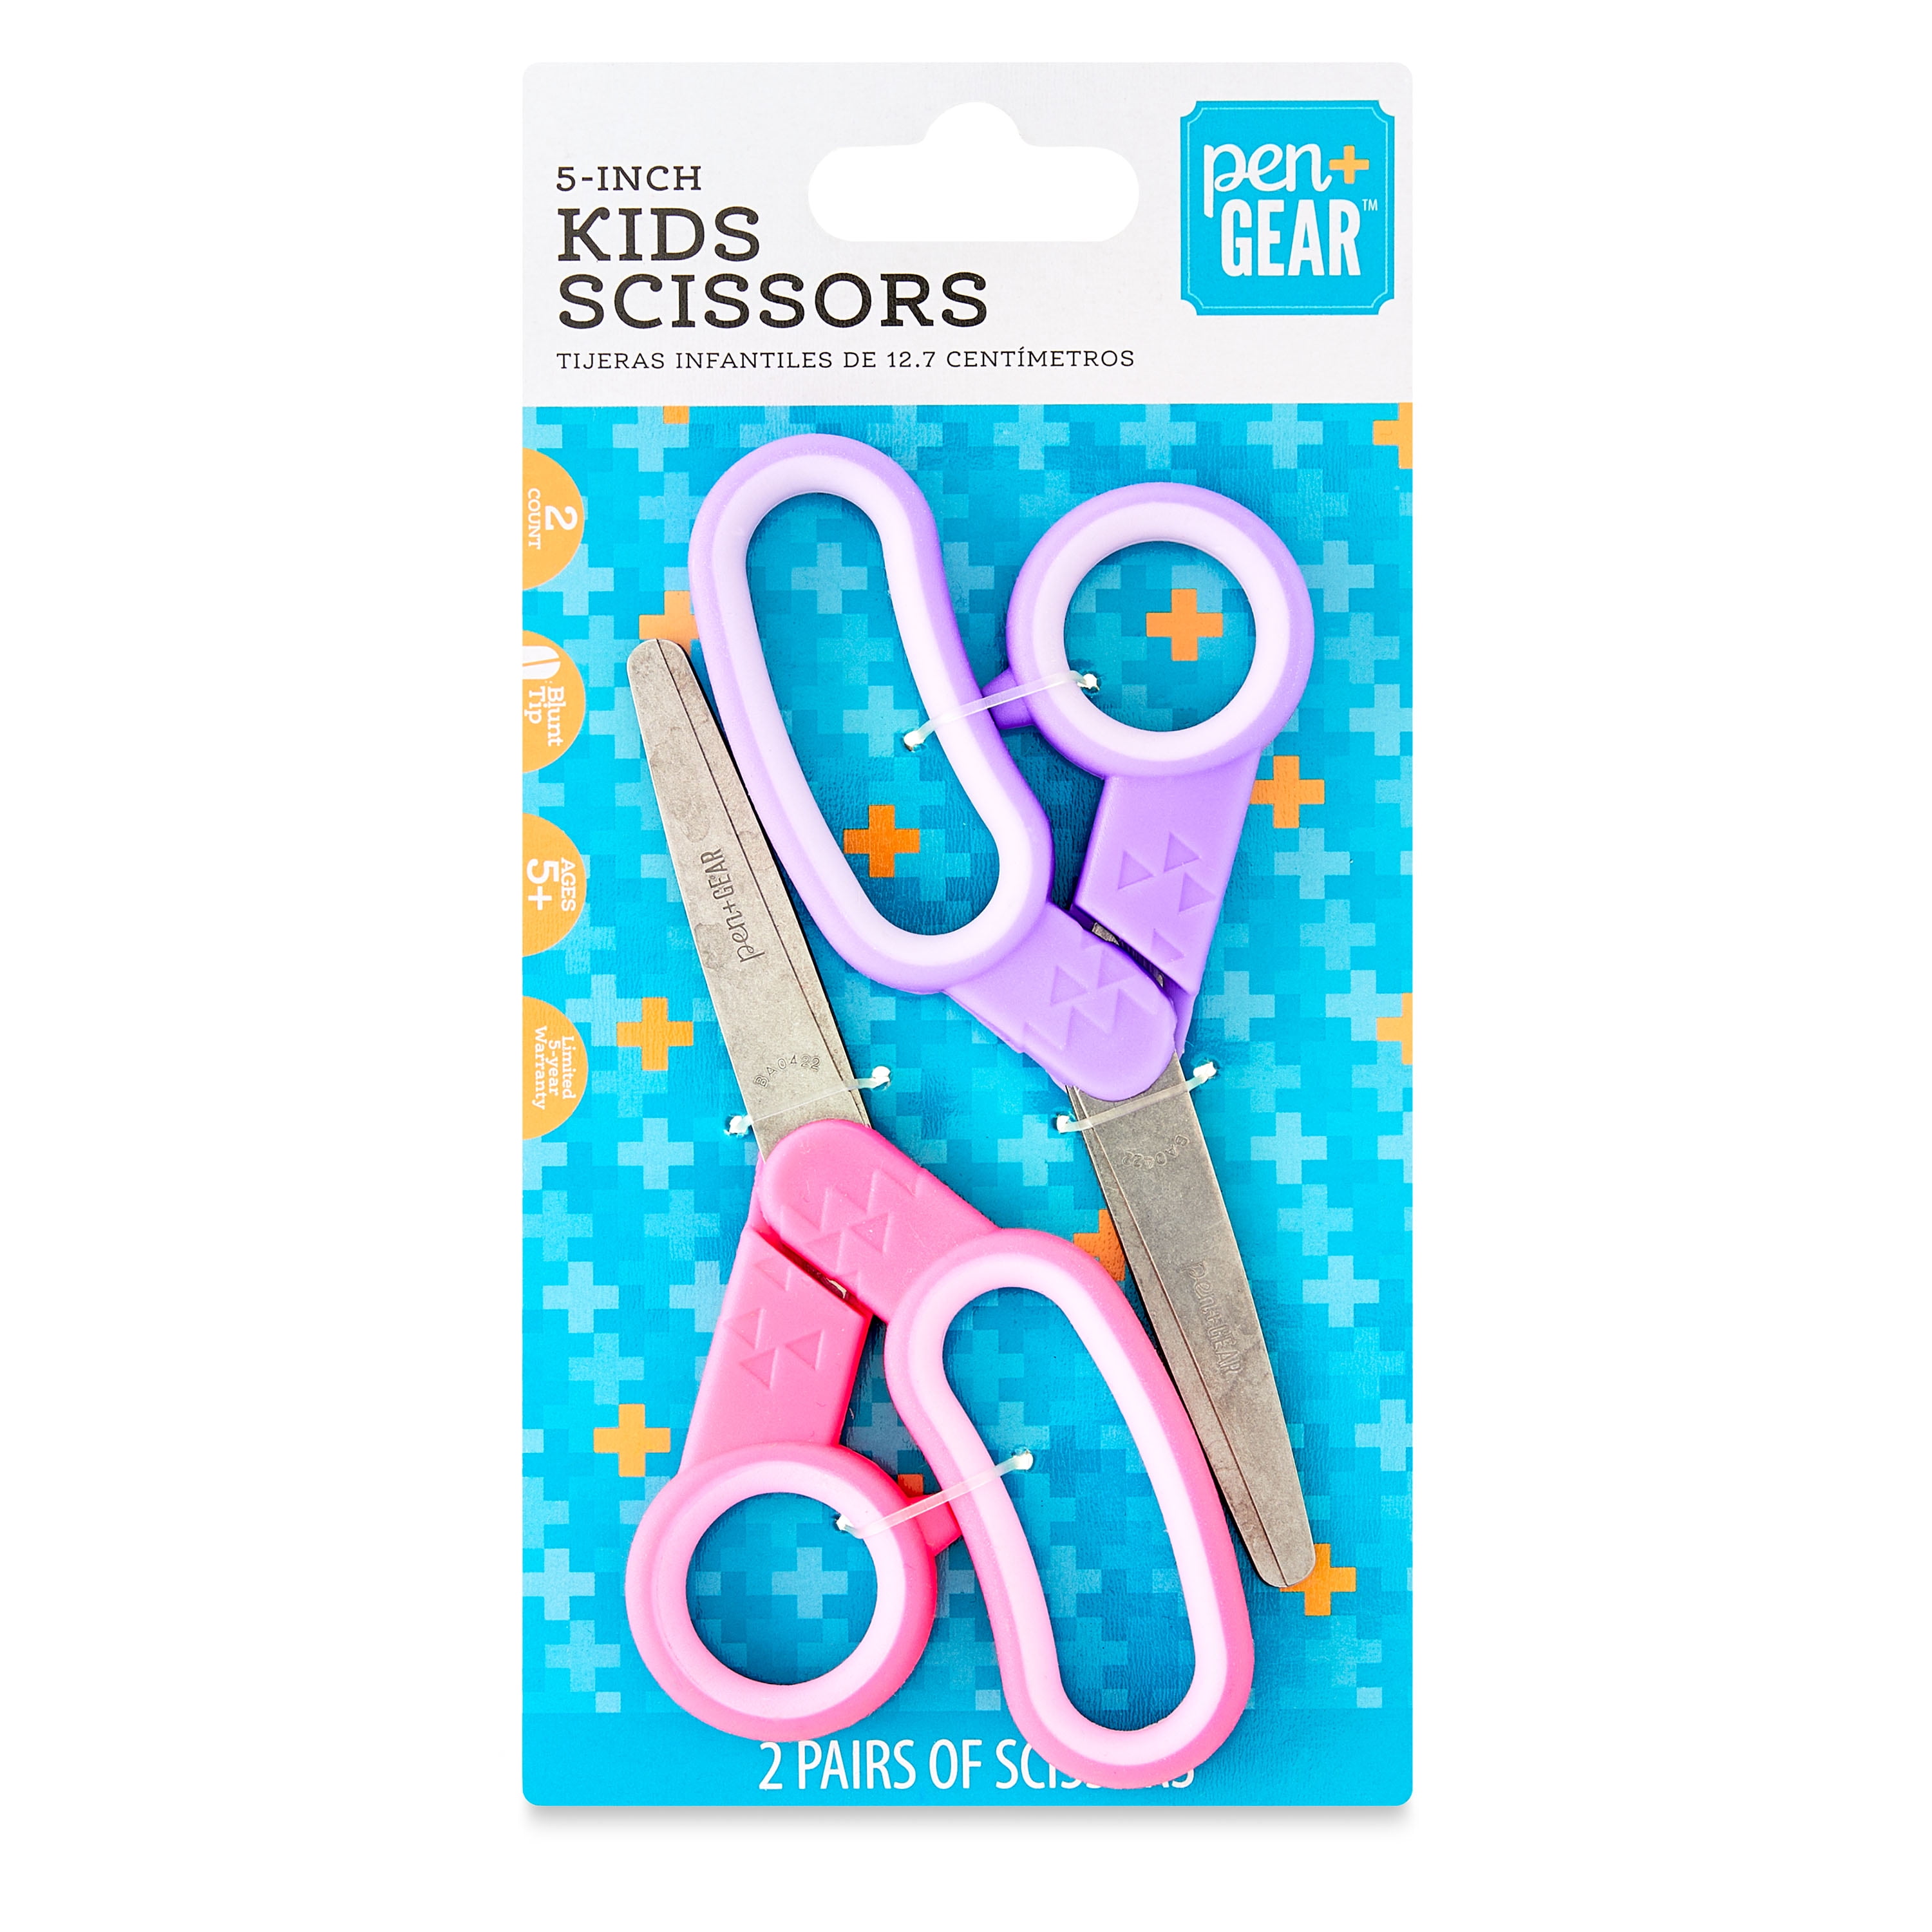 Child Scissors • PAPER SCISSORS STONE